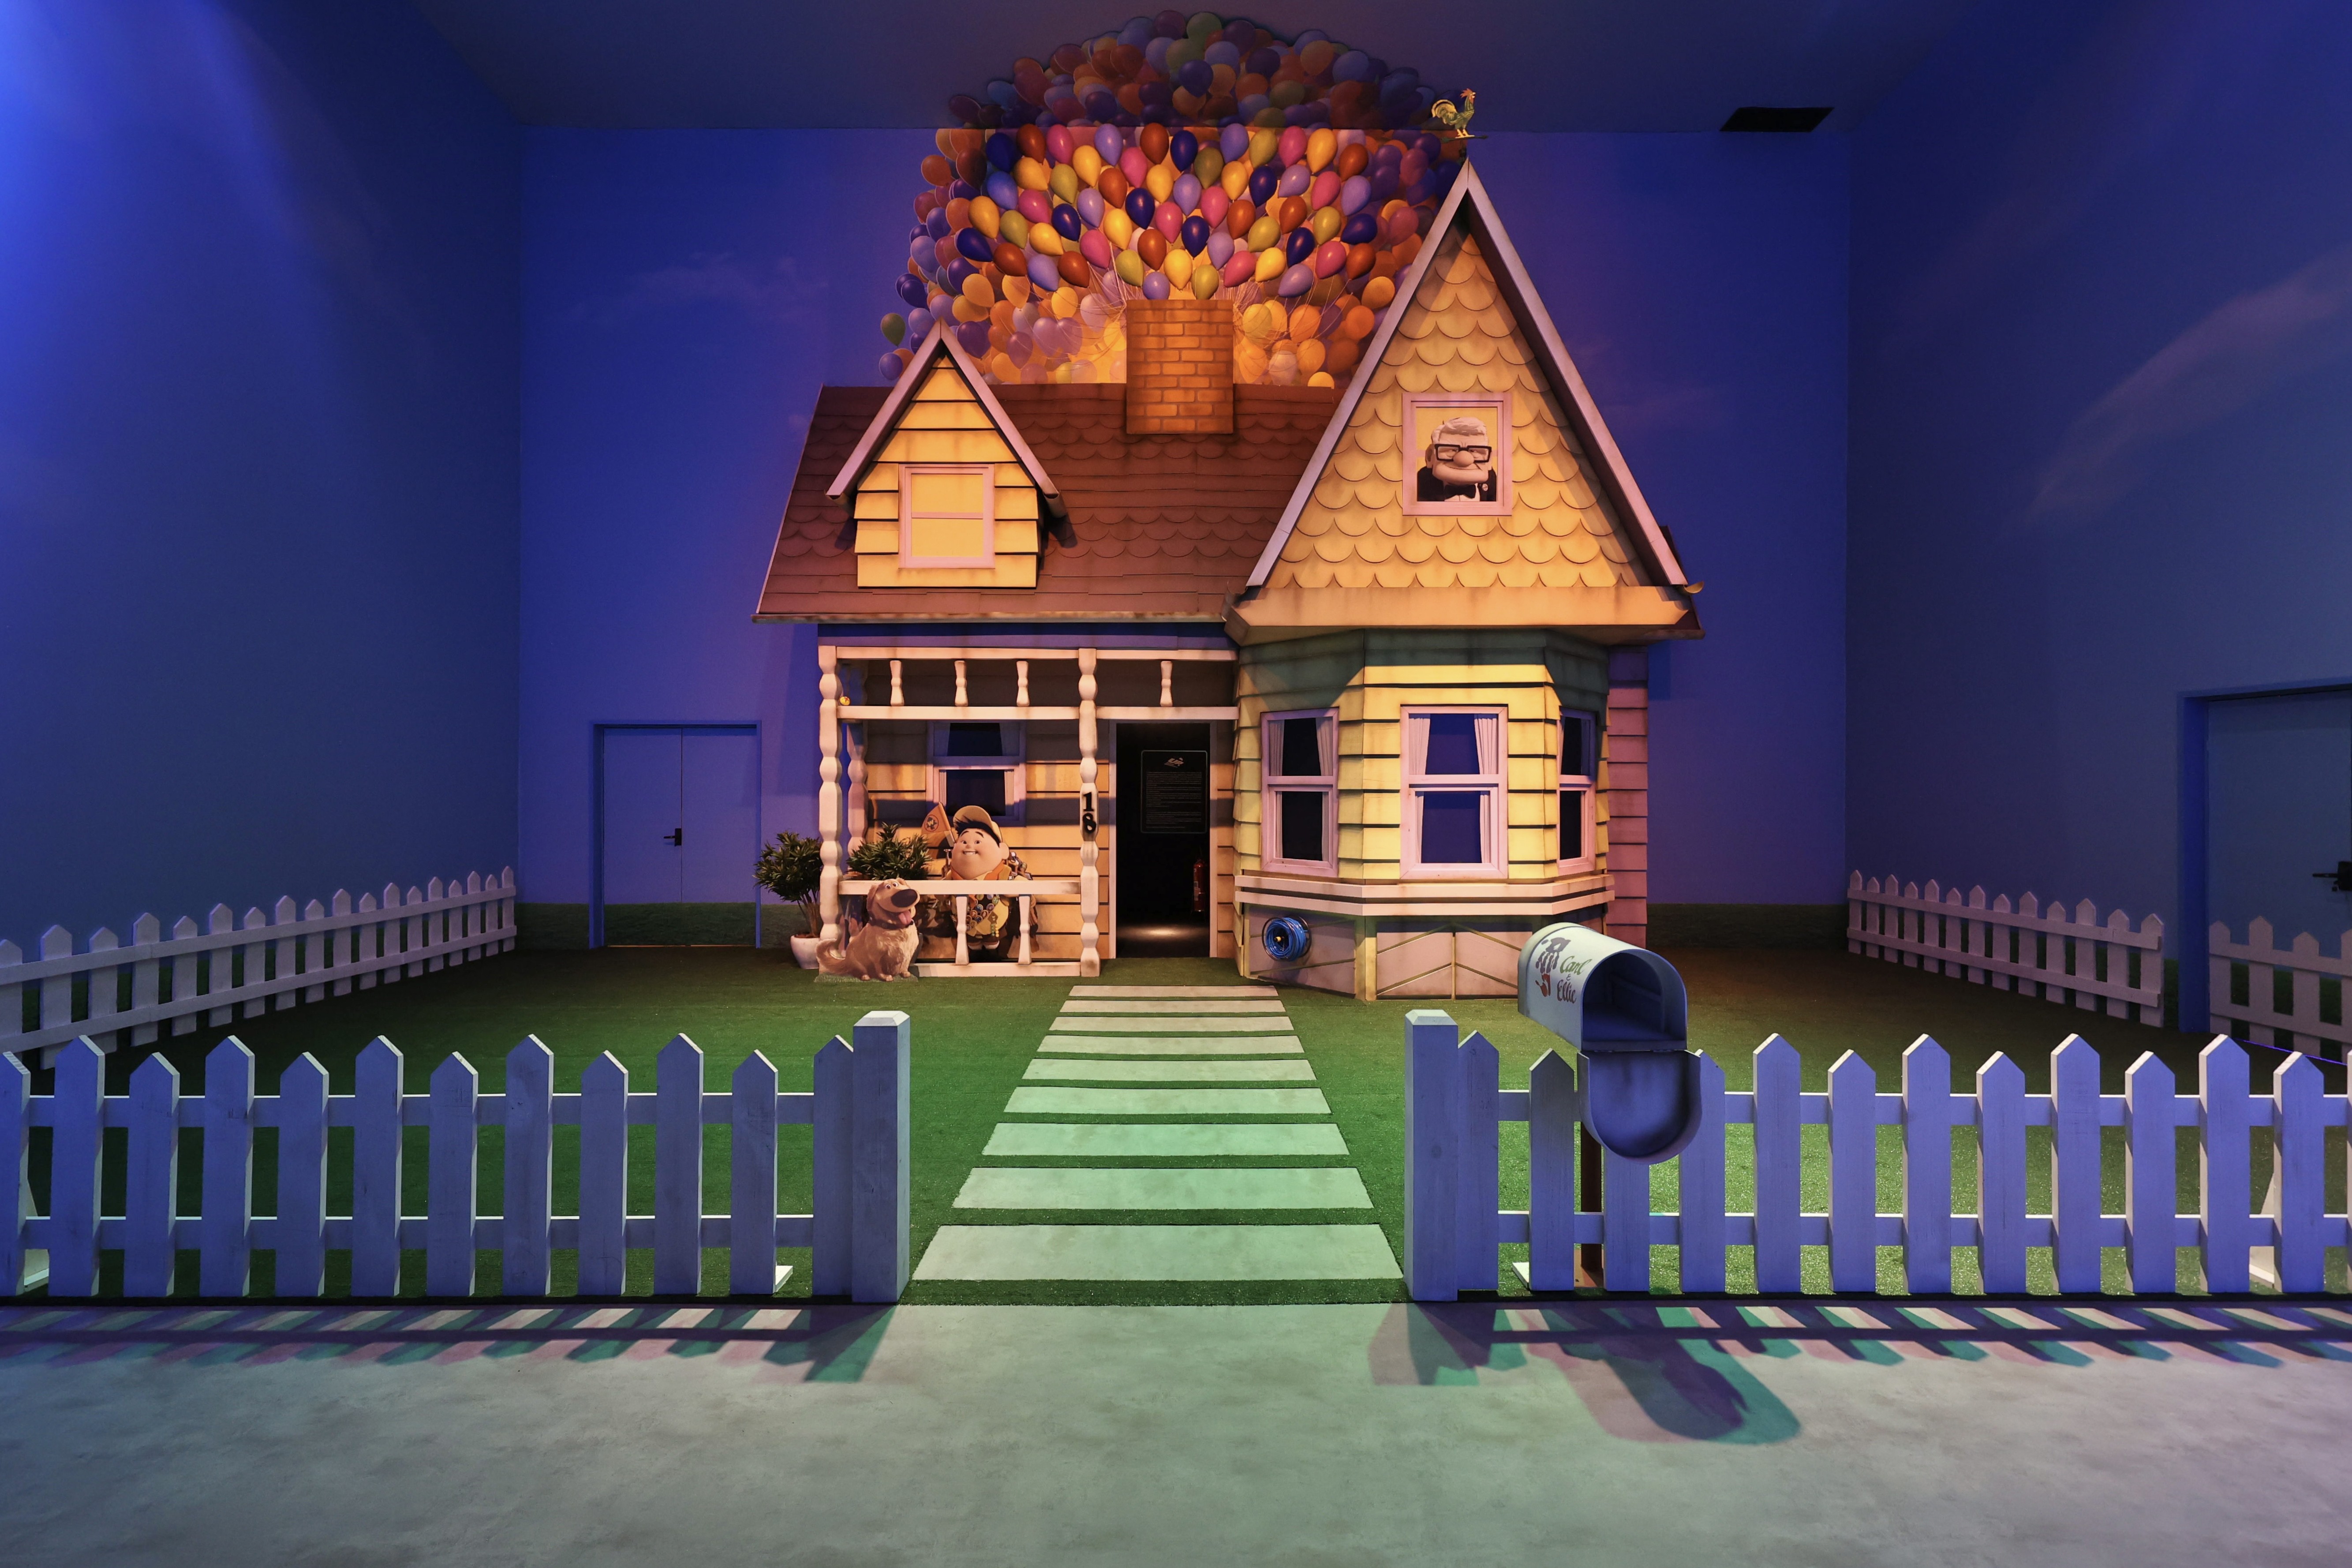 Mundo Pixar recria cenários de filmes icônicos do estúdio (Foto: Divulgação/The Walt Disney Company Brasil)